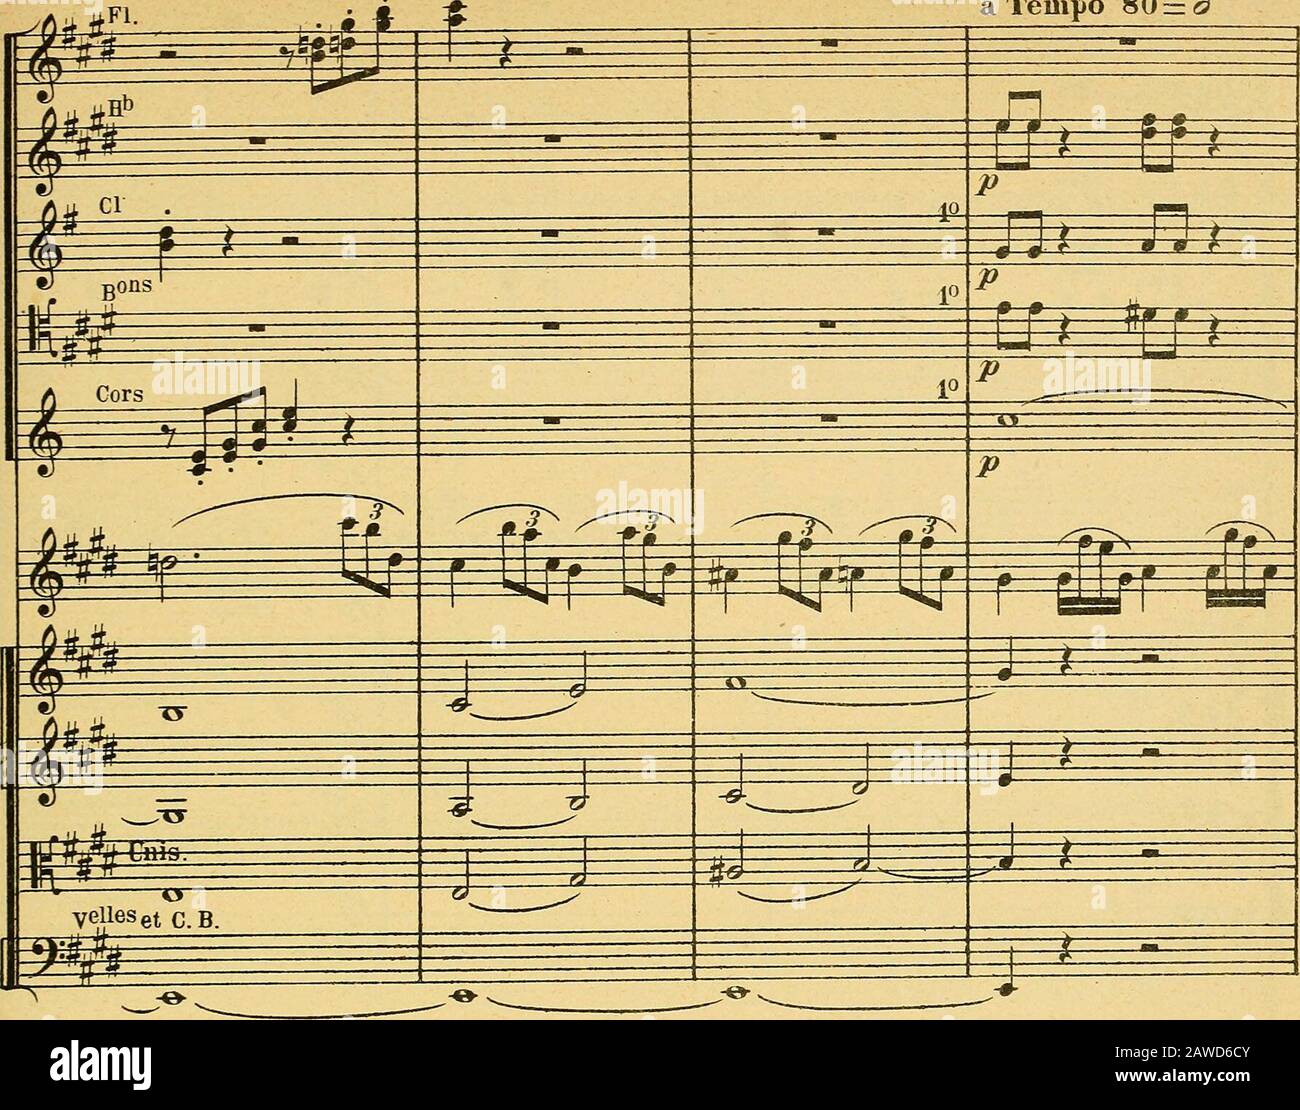 Morceau de concert : pour violon avec accompagnement d'orchestre ou de piano,  op62 . i i S 3^ ^ft J J ft ^ m m -&- £©: tj rtfcj Ppl i ^